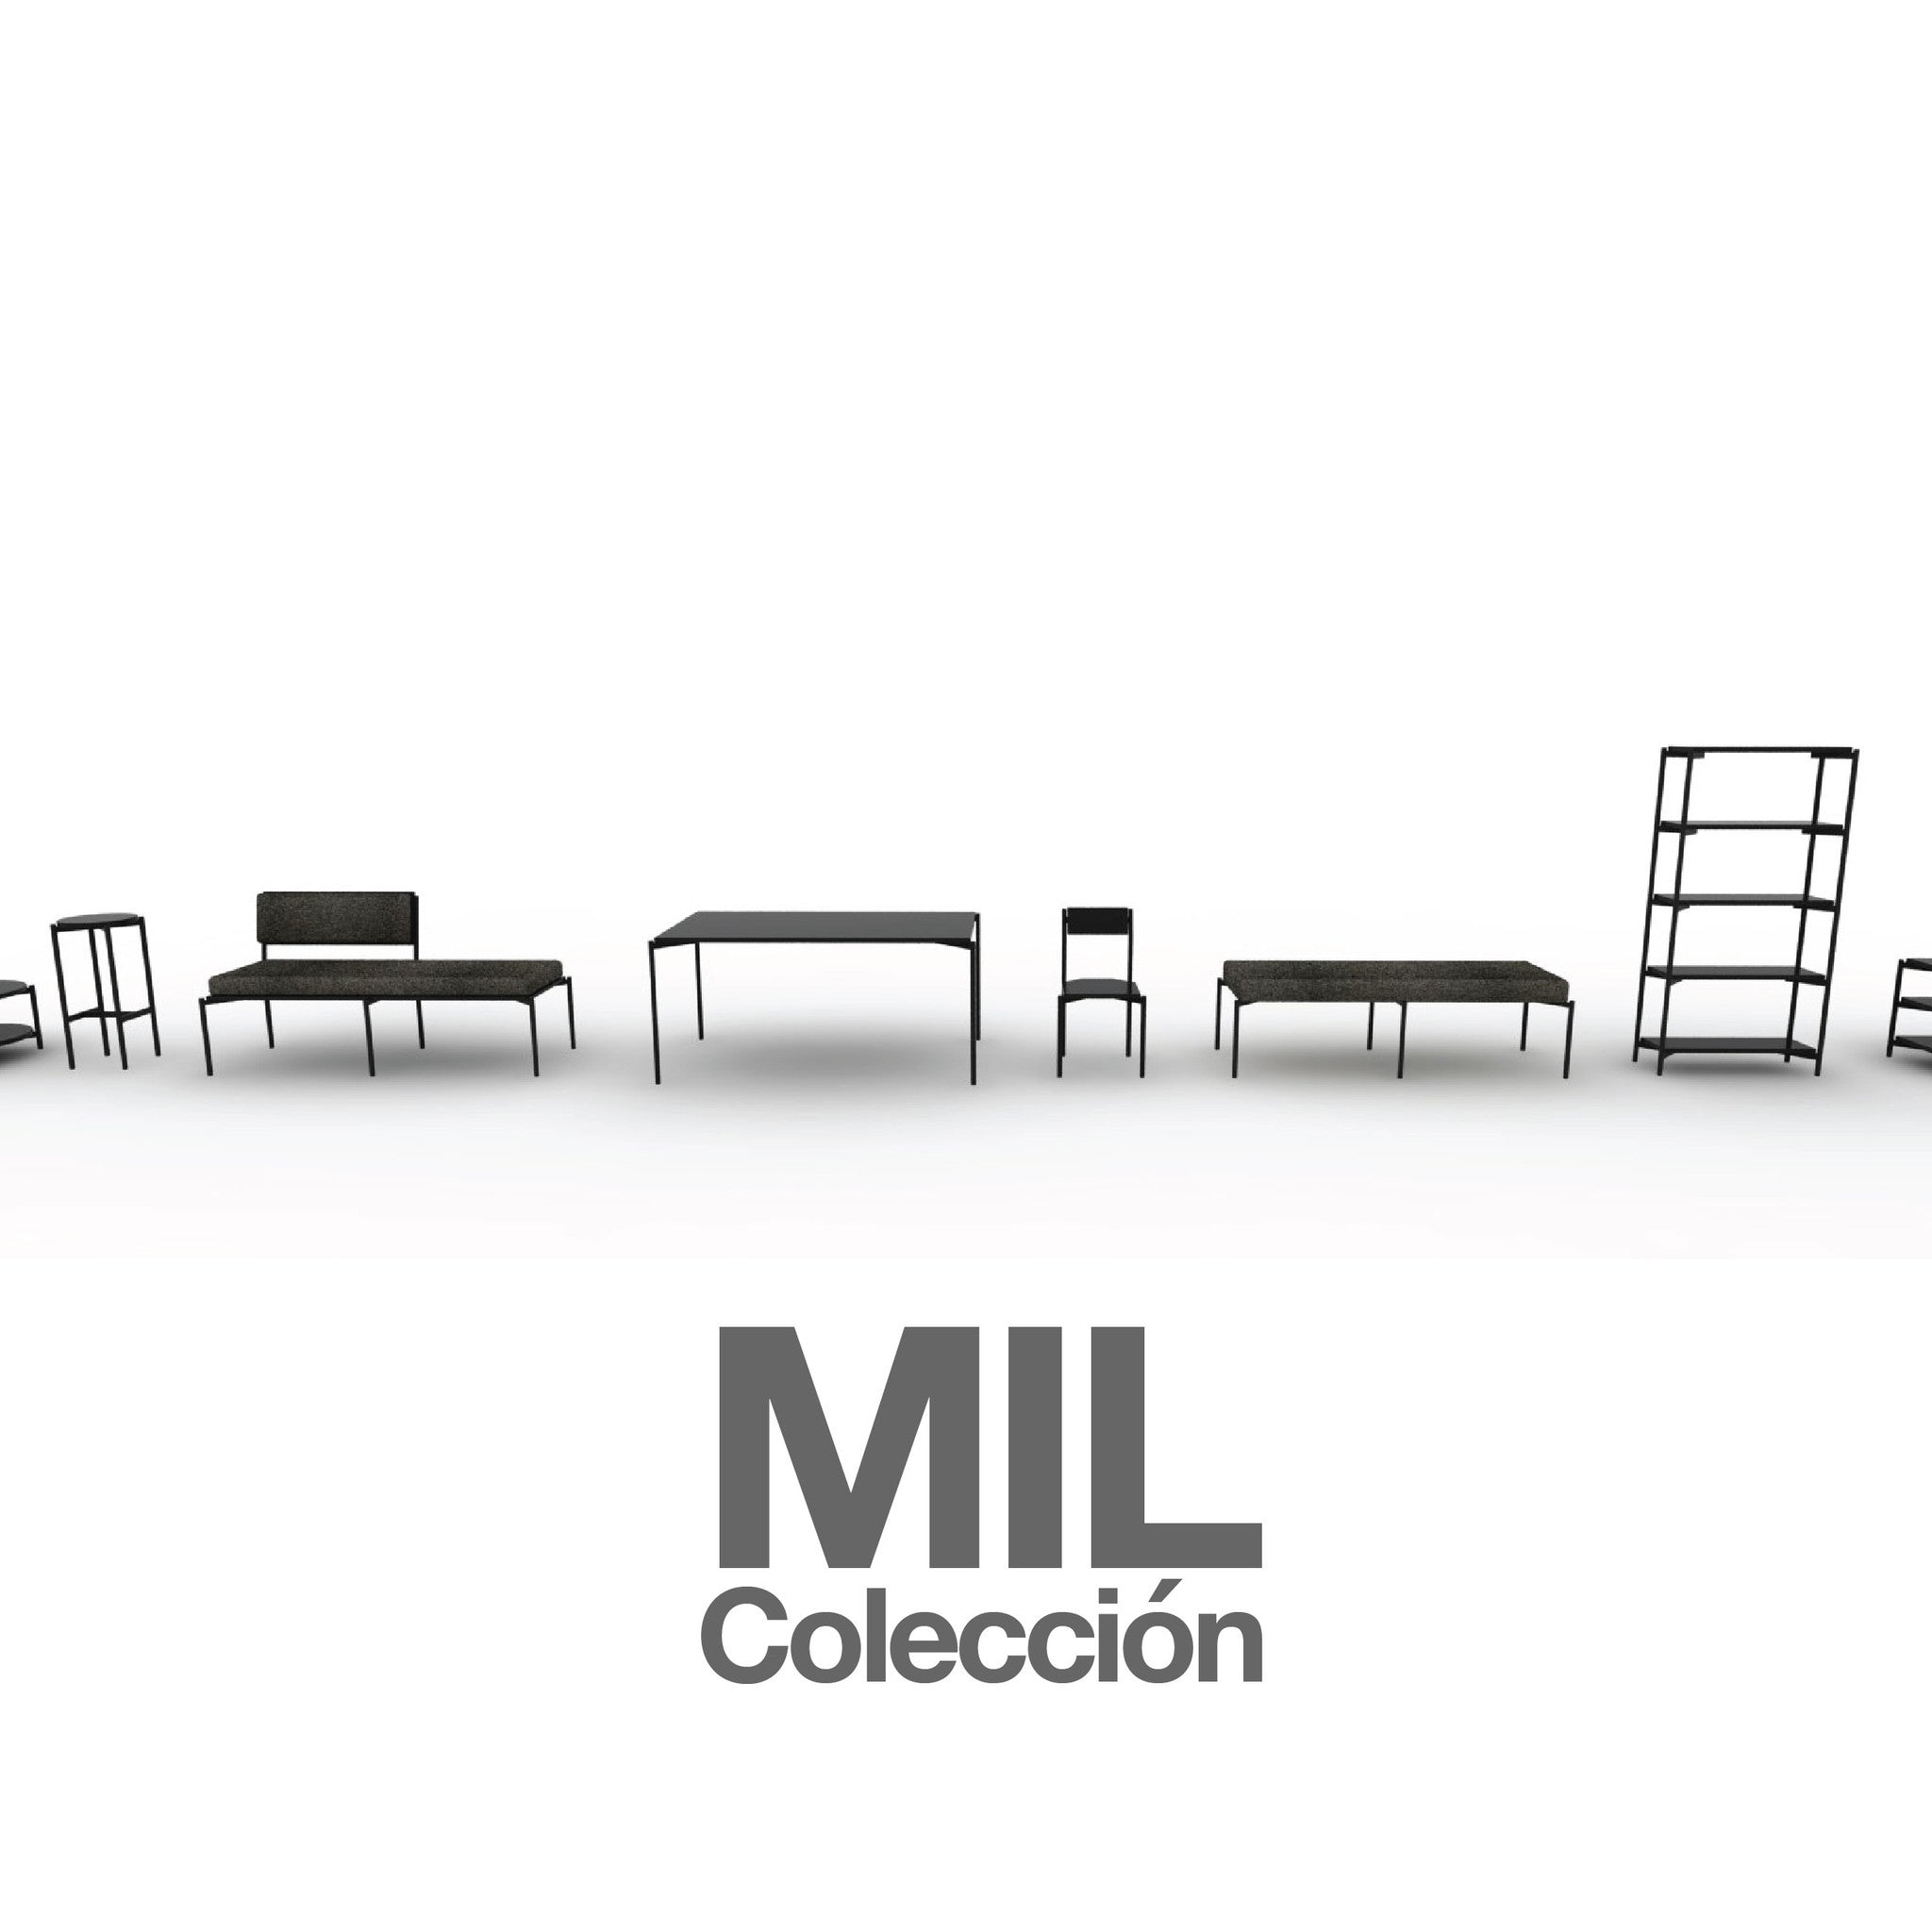 collections/Portada_de_Coleccion_MIL-2-01.jpg